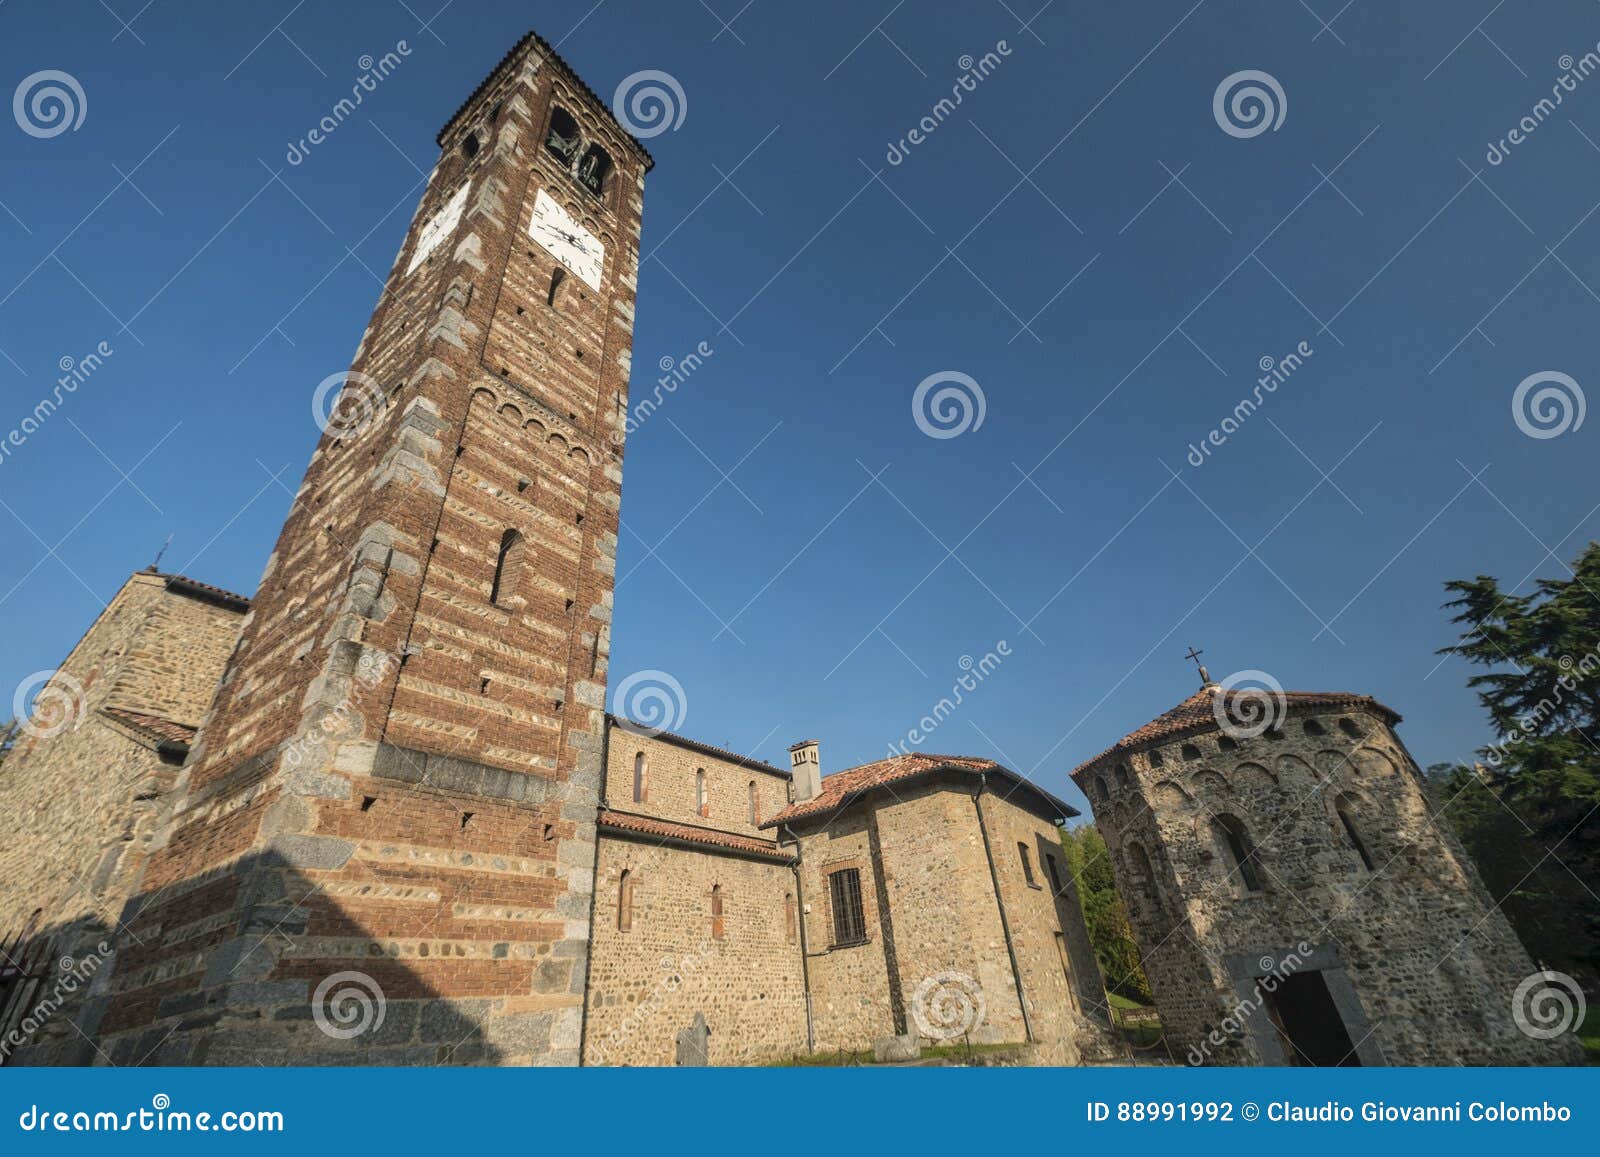 agliate brianza italy: historic church